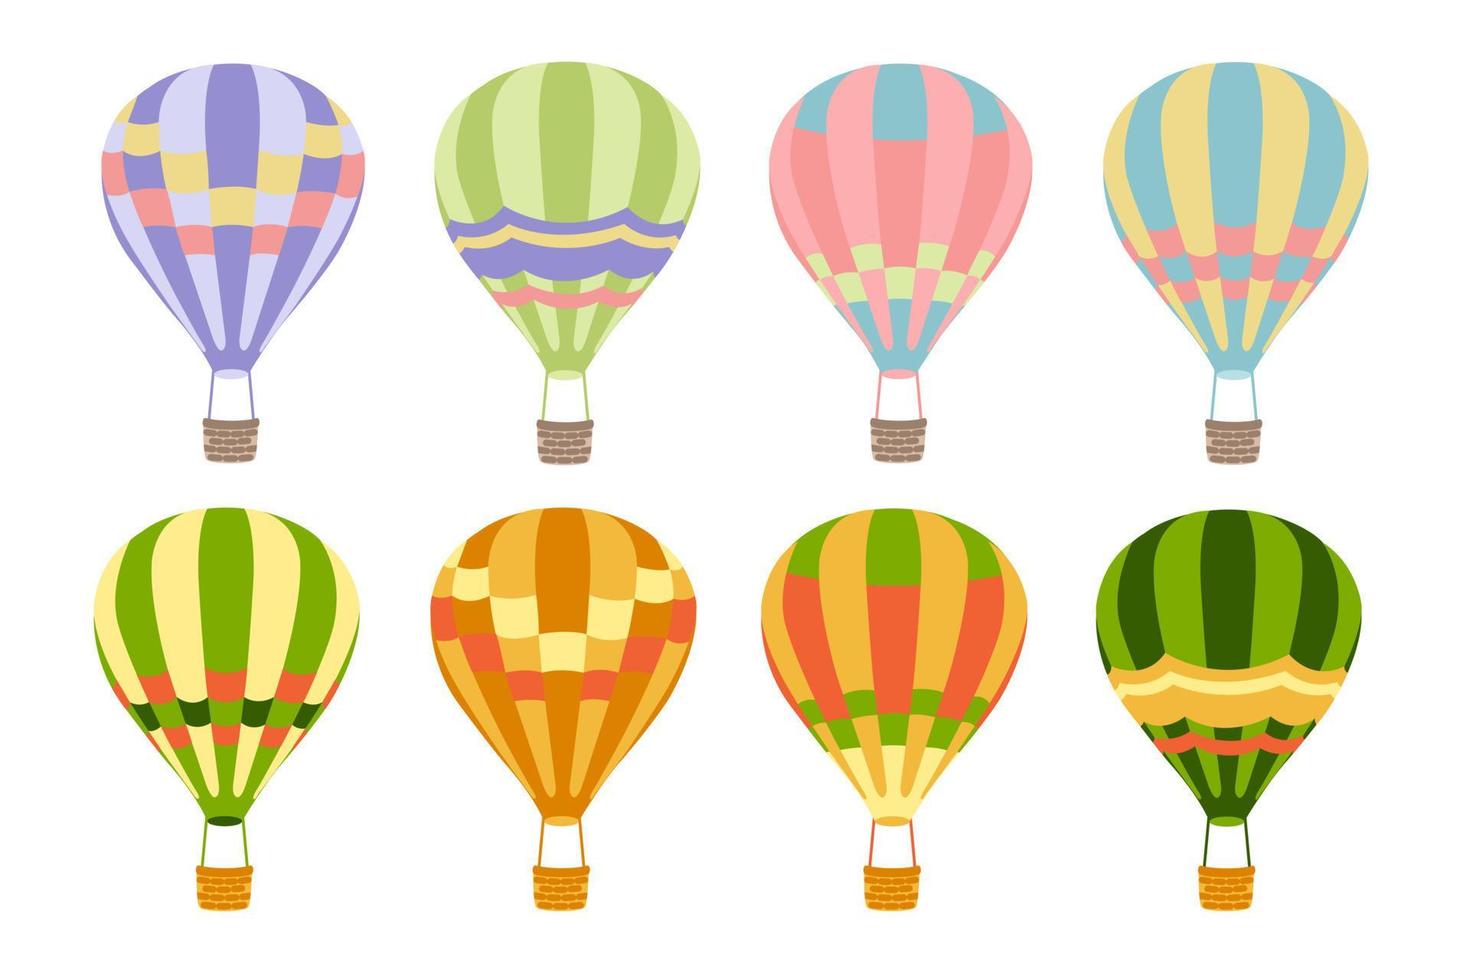 Stellen Sie verschiedene farbige Luftballons im flachen Stil auf weißem Hintergrund ein. die Sammlung von Heißluftballons. Cartoon-Stil. isoliertes Objekt. designkonzept, vorlage, element. vektor